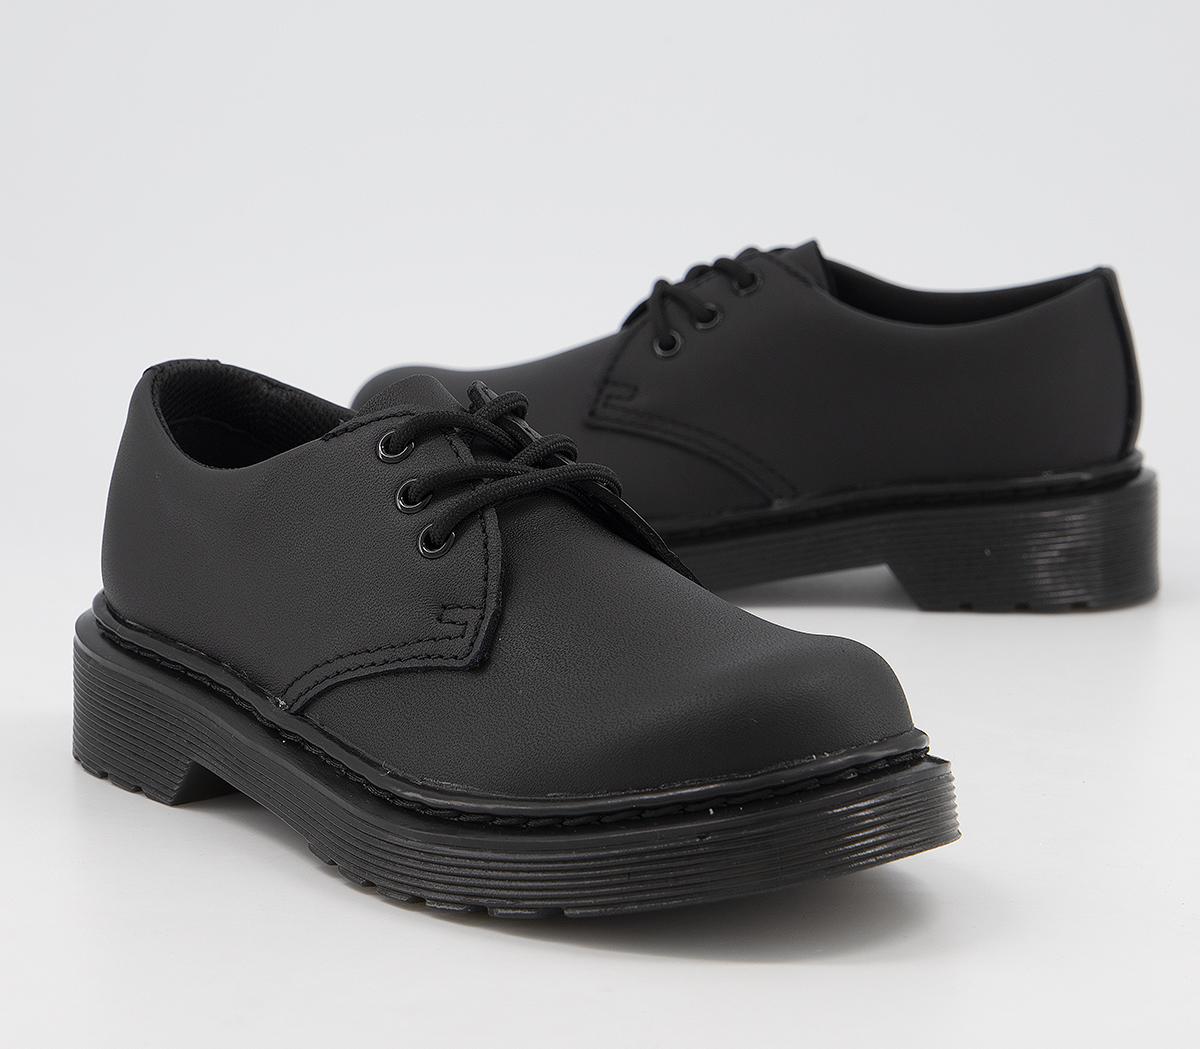 Dr. Martens 1461 Lace Shoes Jnr Black Mono Leather - Boys’ School Shoes